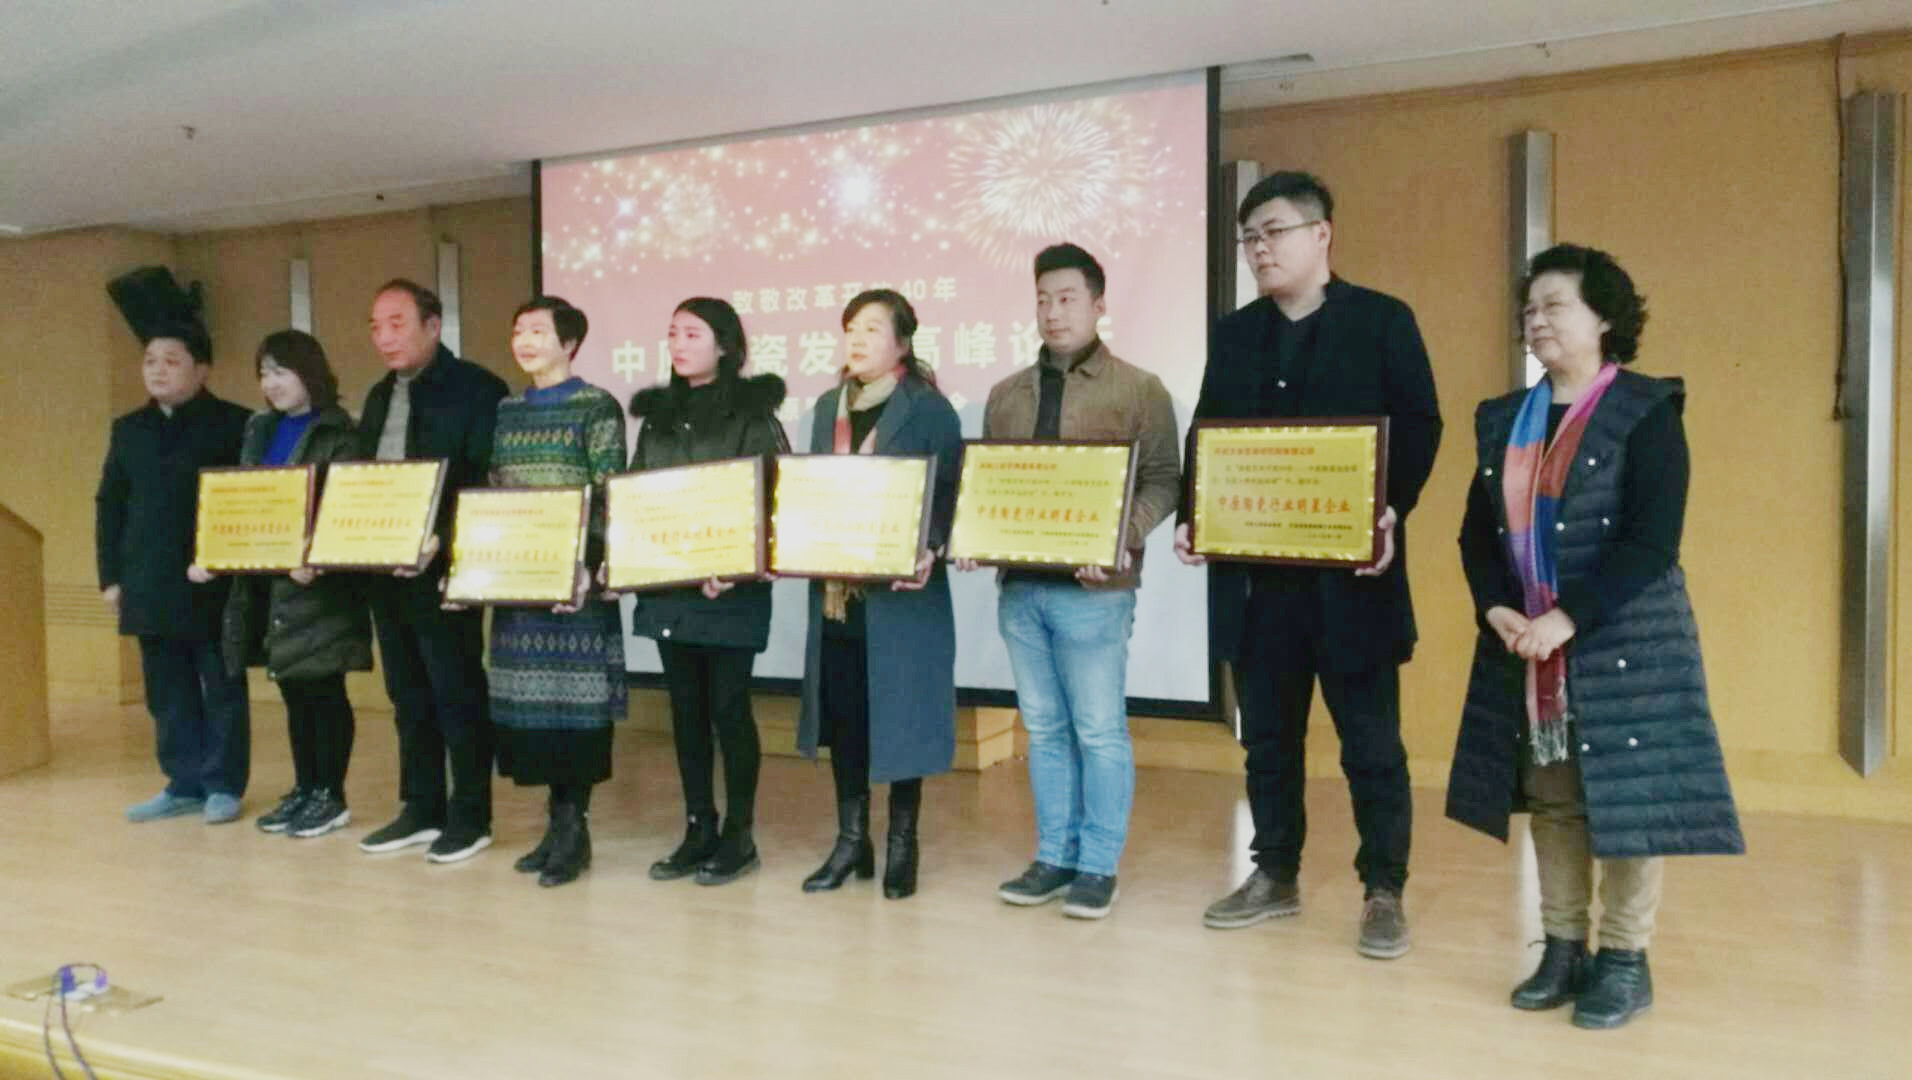 祝贺北宋官窑非遗传承人王东霞带领的团队被评为“中原陶瓷行业明星企业”